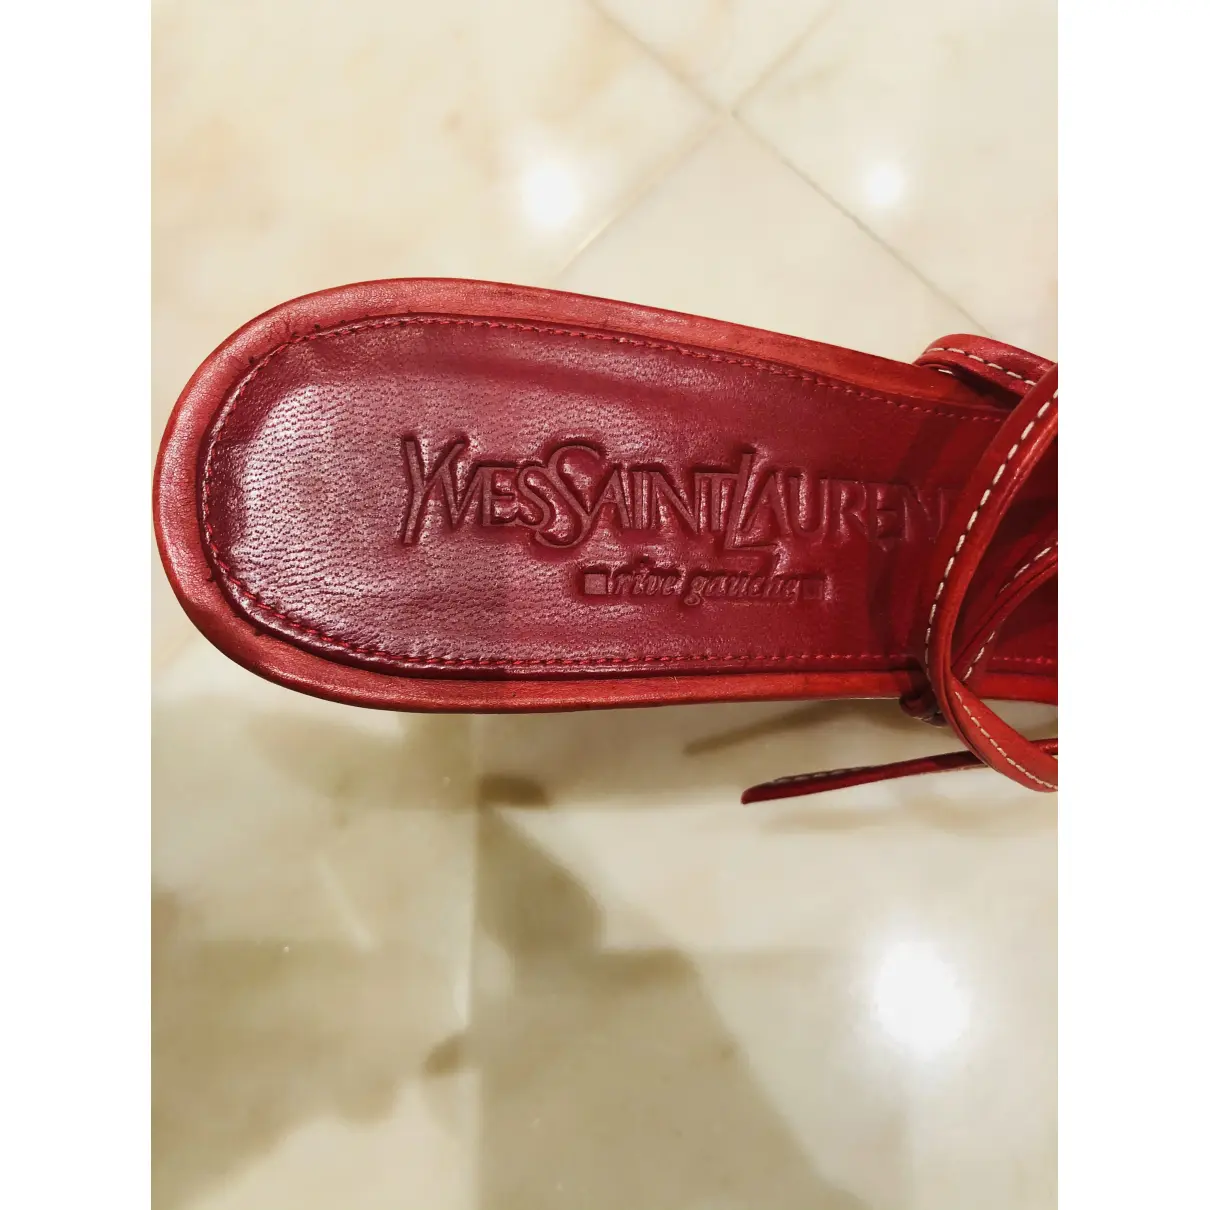 Leather sandals Yves Saint Laurent